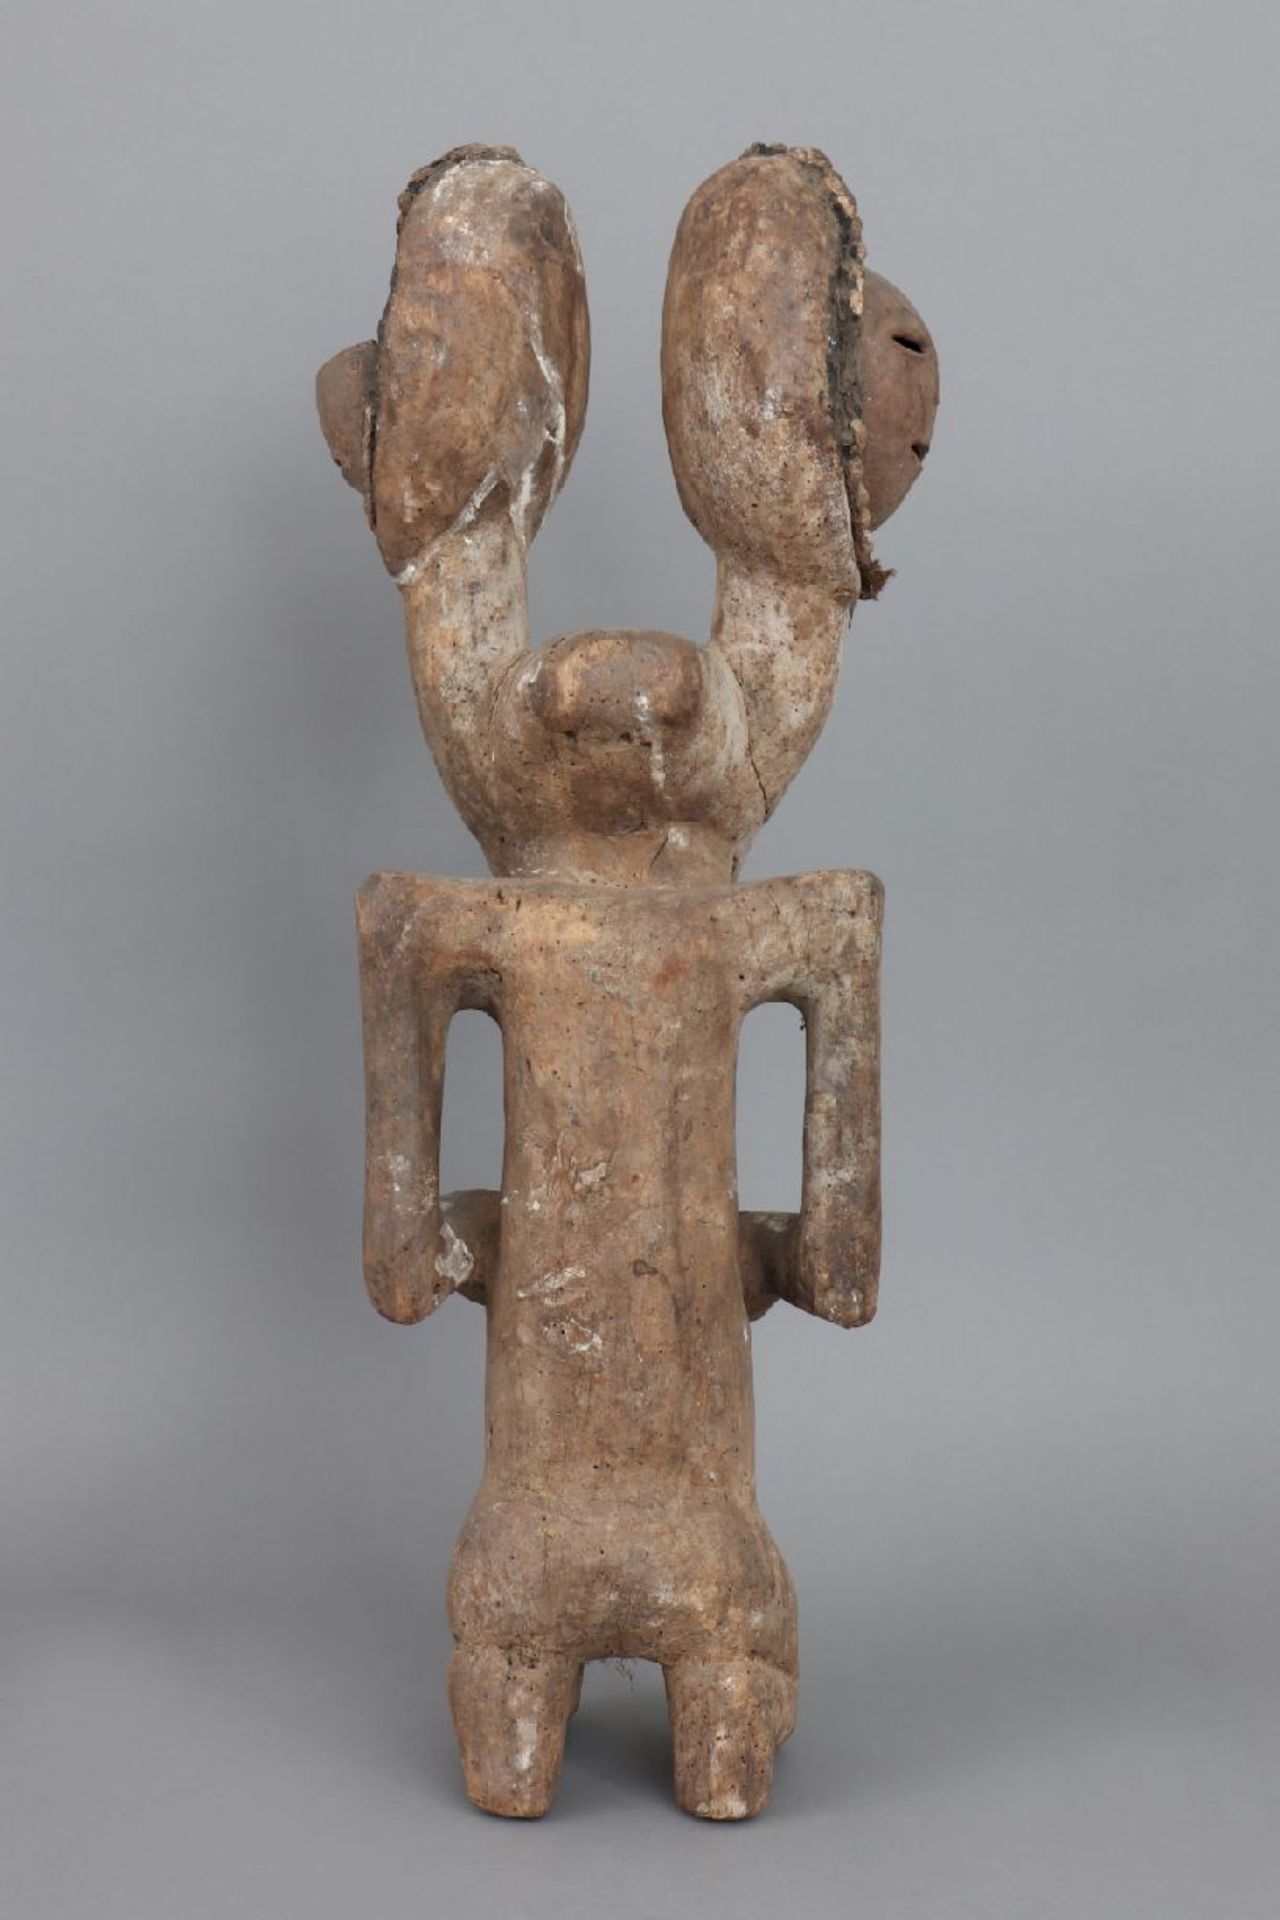 Afrikanische Ikenga Figur der Igbo, NigeriaHolz, geschnitzt und patiniert, knieende weibliche - Image 4 of 6